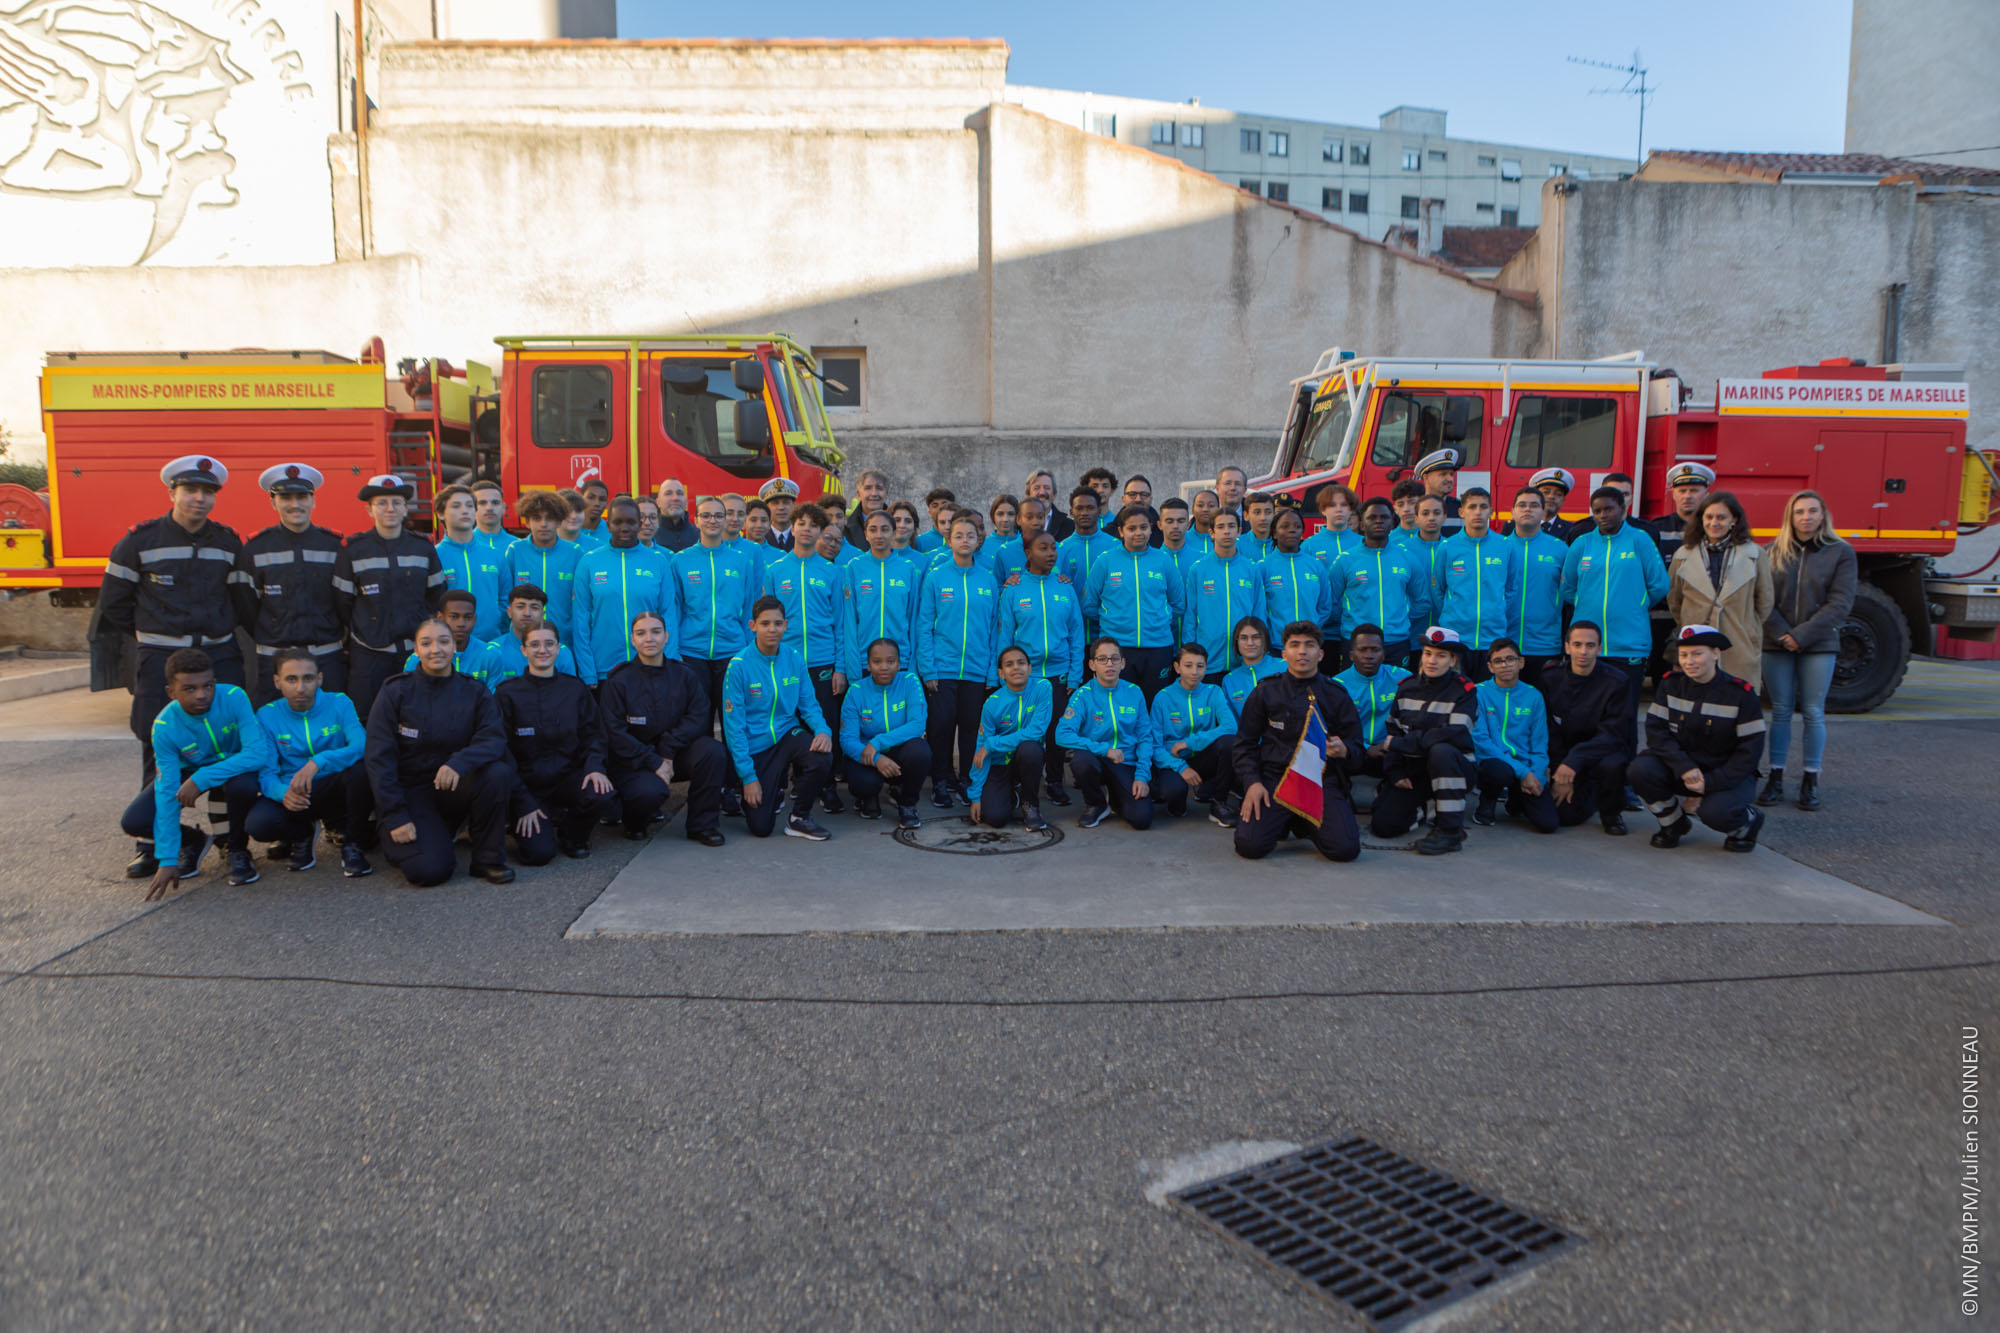  Une nouvelle promotion de cadets rejoint la famille du bataillon de marins-pompiers de Marseille